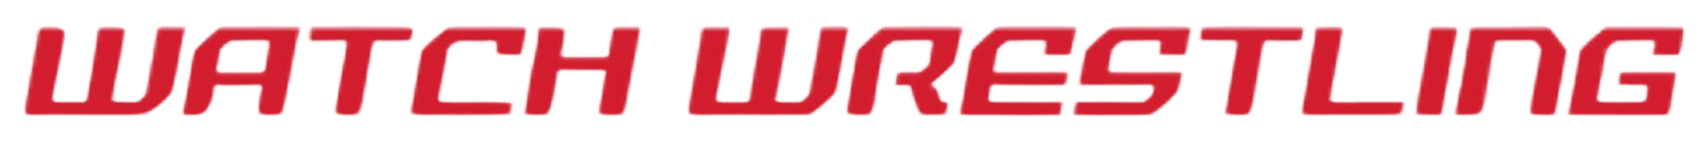 watch-wrestling-cloud-logo